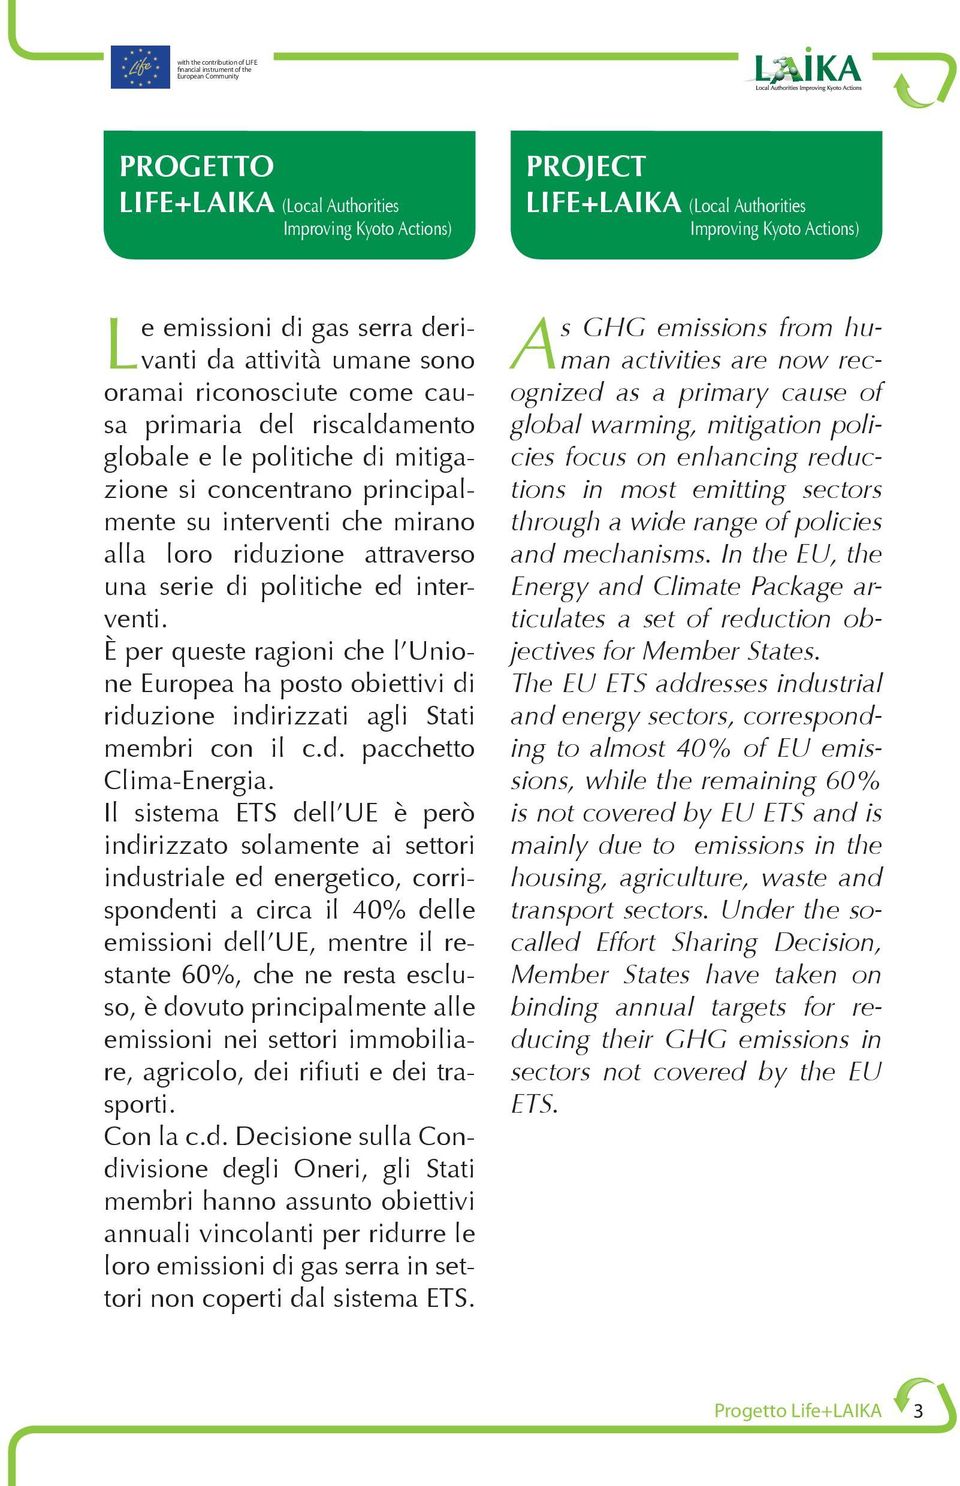 ed interventi. È per queste ragioni che l Unione Europea ha posto obiettivi di riduzione indirizzati agli Stati membri con il c.d. pacchetto Clima-Energia.